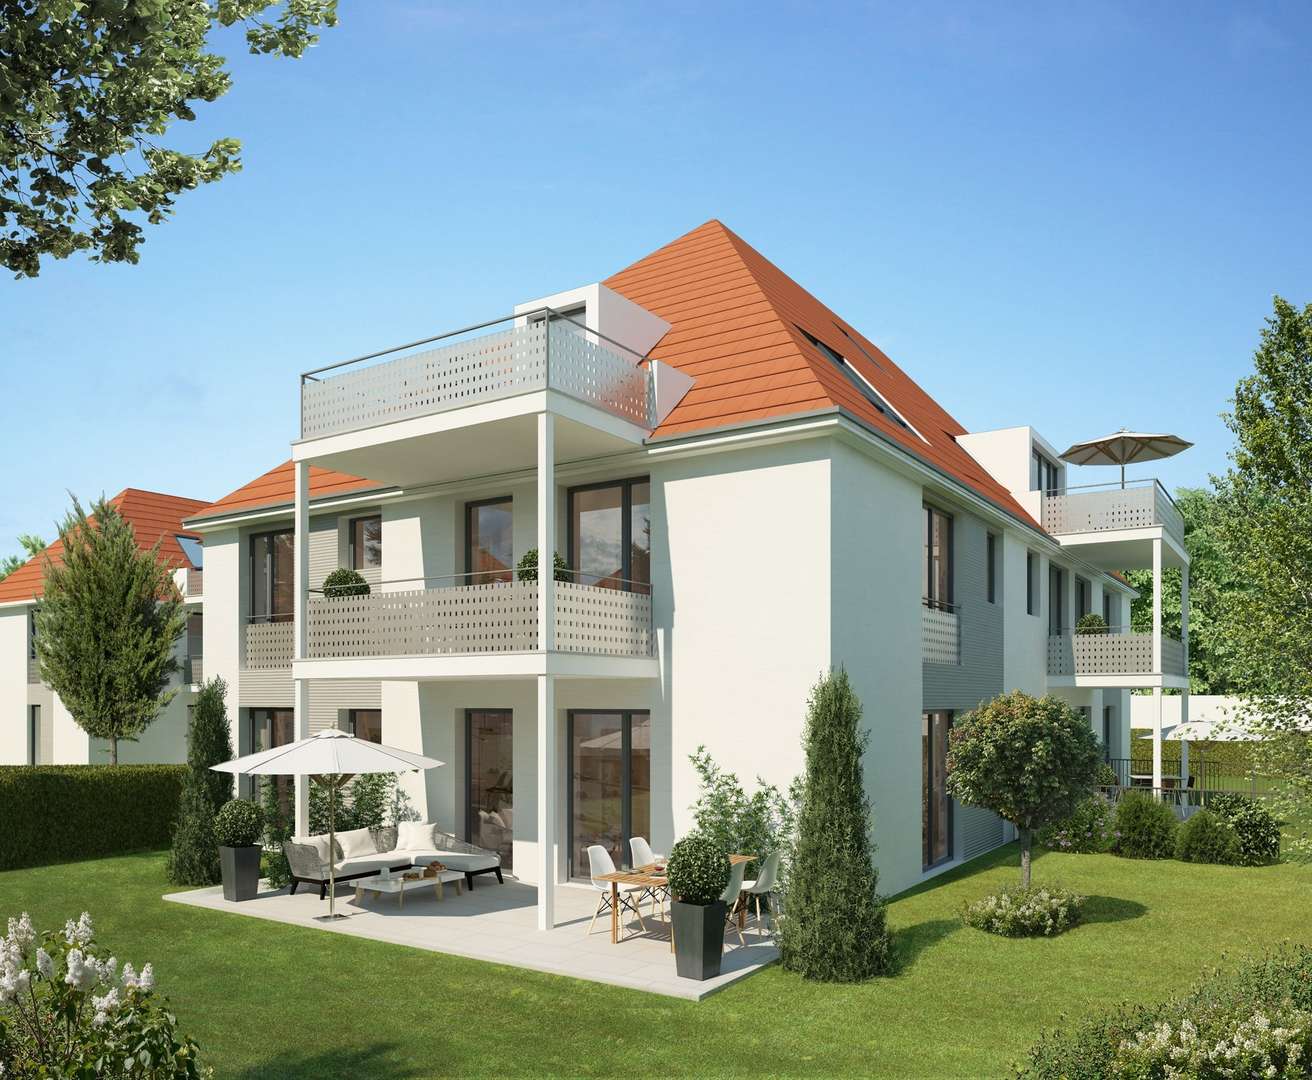 Haus 4 - Erdgeschosswohnung in 81476 München mit 53m² kaufen